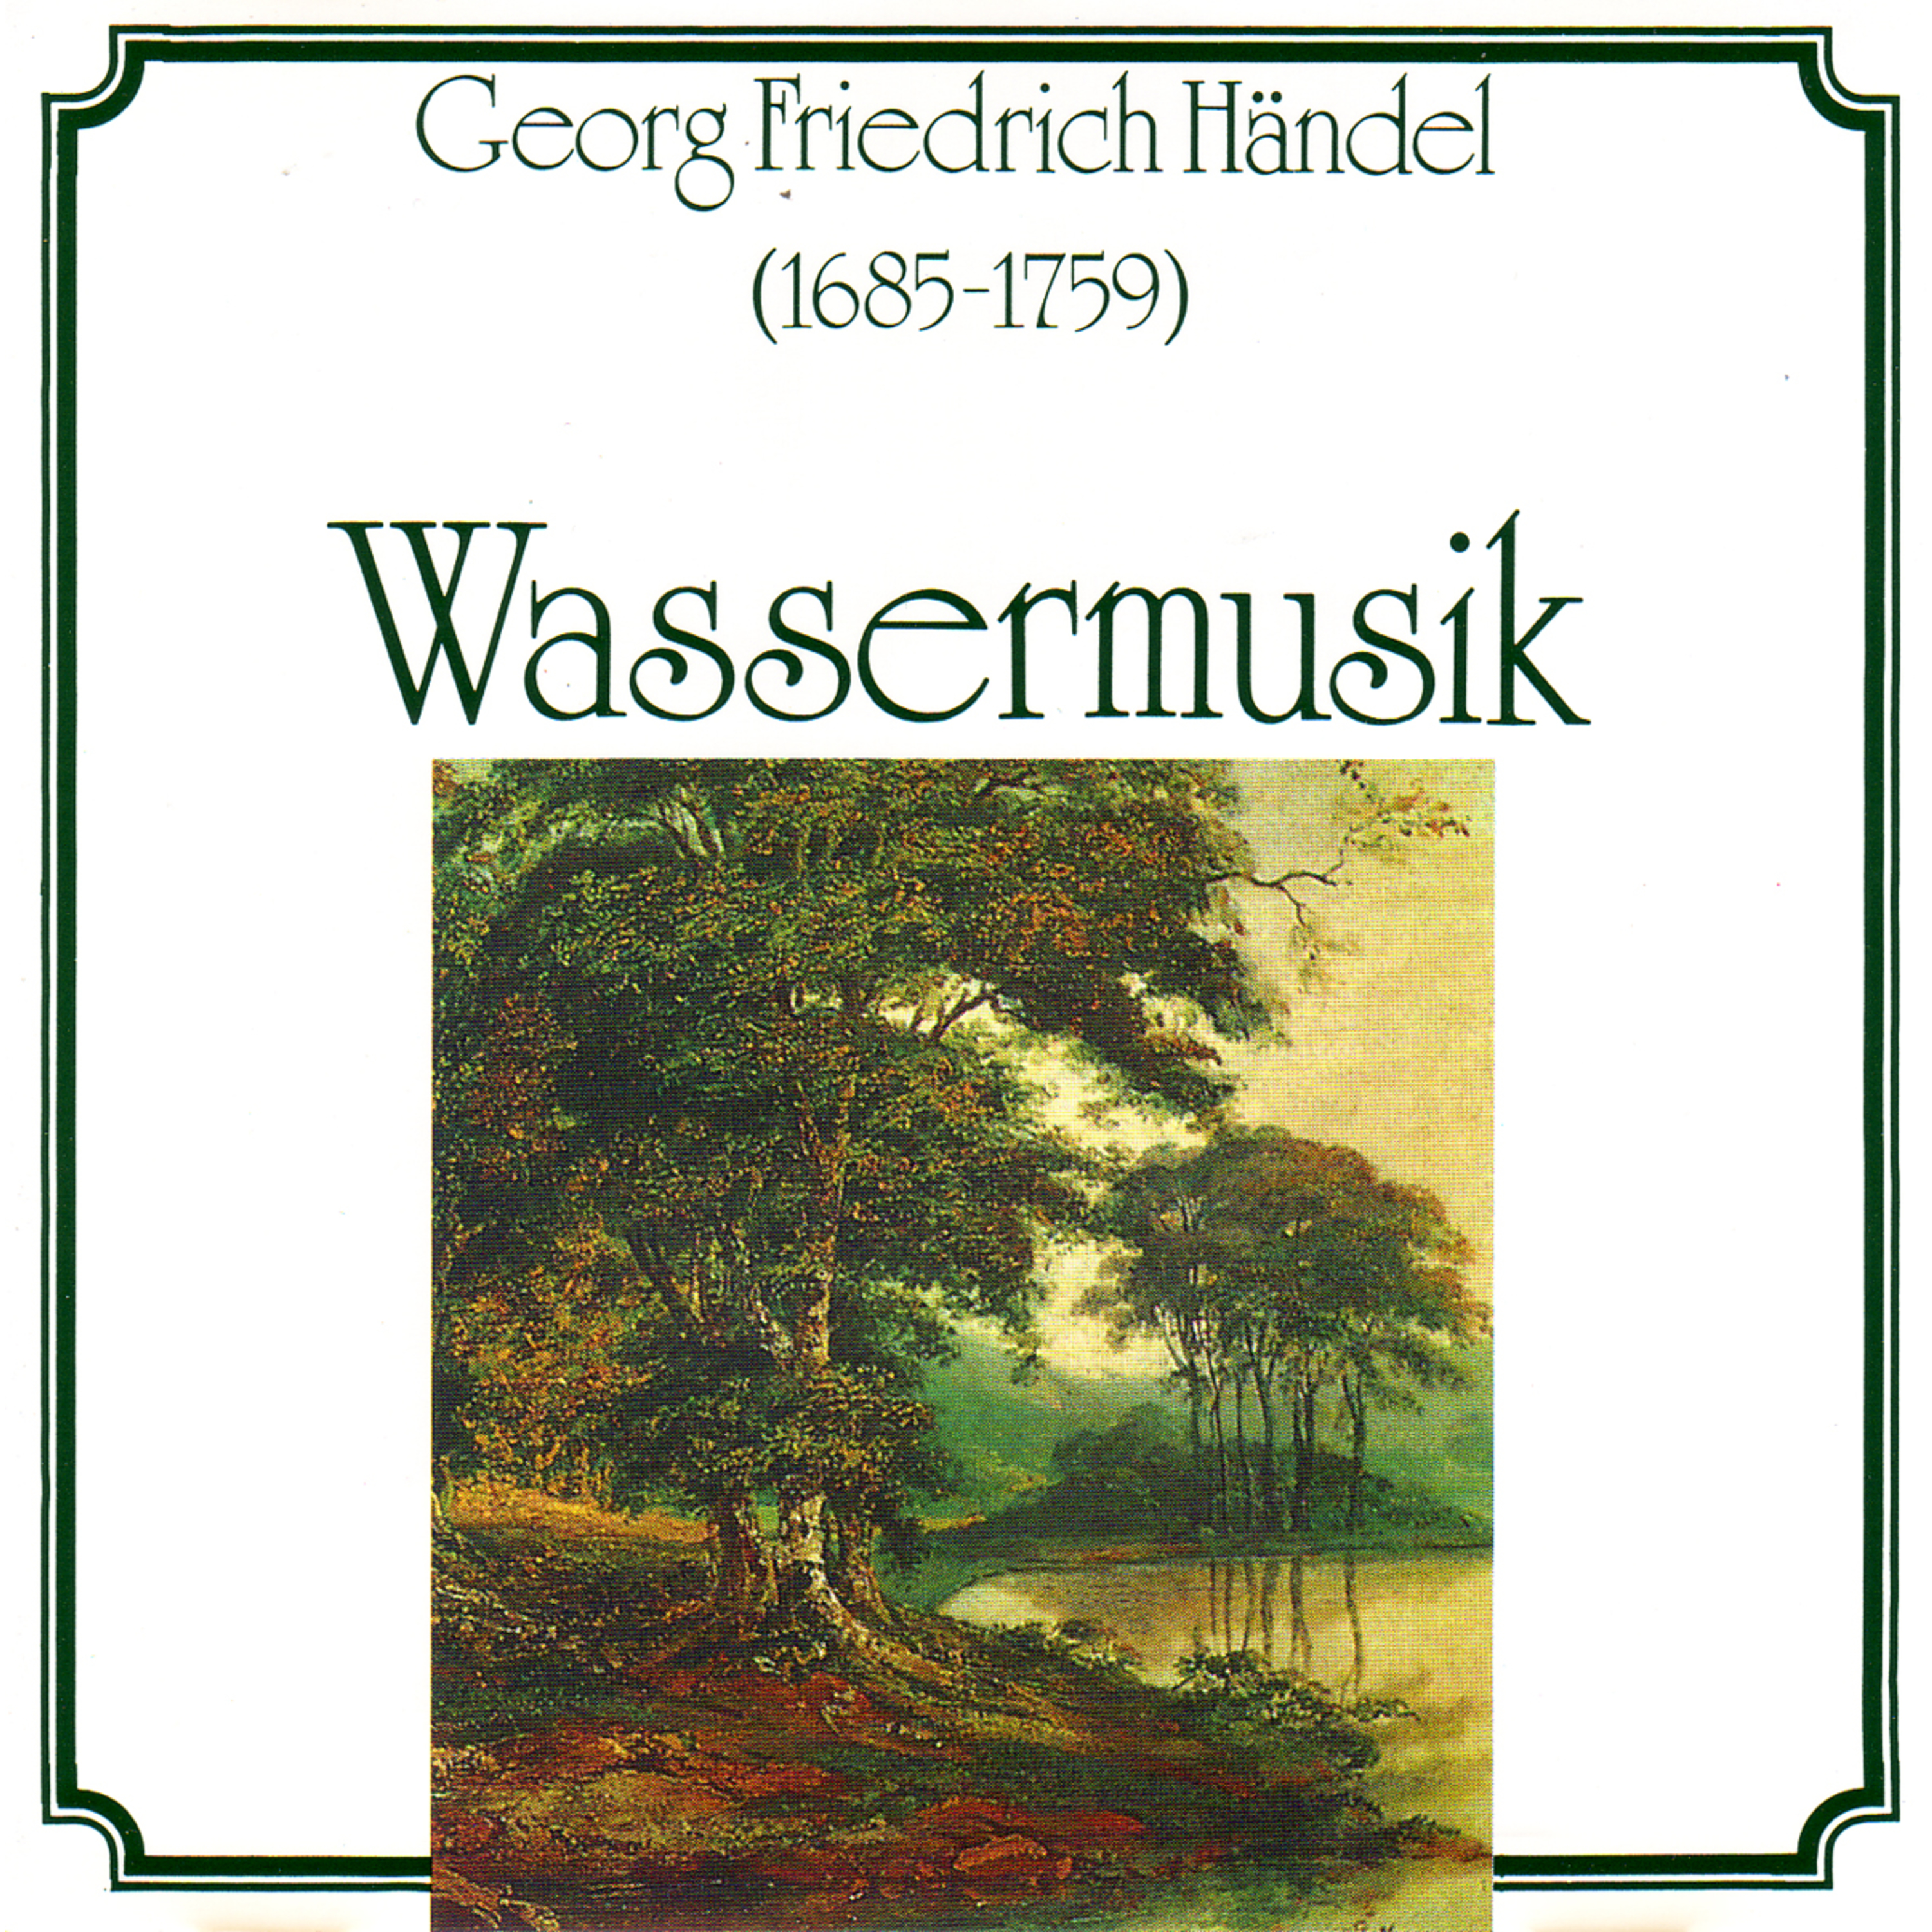 Handel: Wassermusik, No. 1, HWV 348 - Concerto grosso, Op. 6/7, Op. 6/10 & Op. 6/12